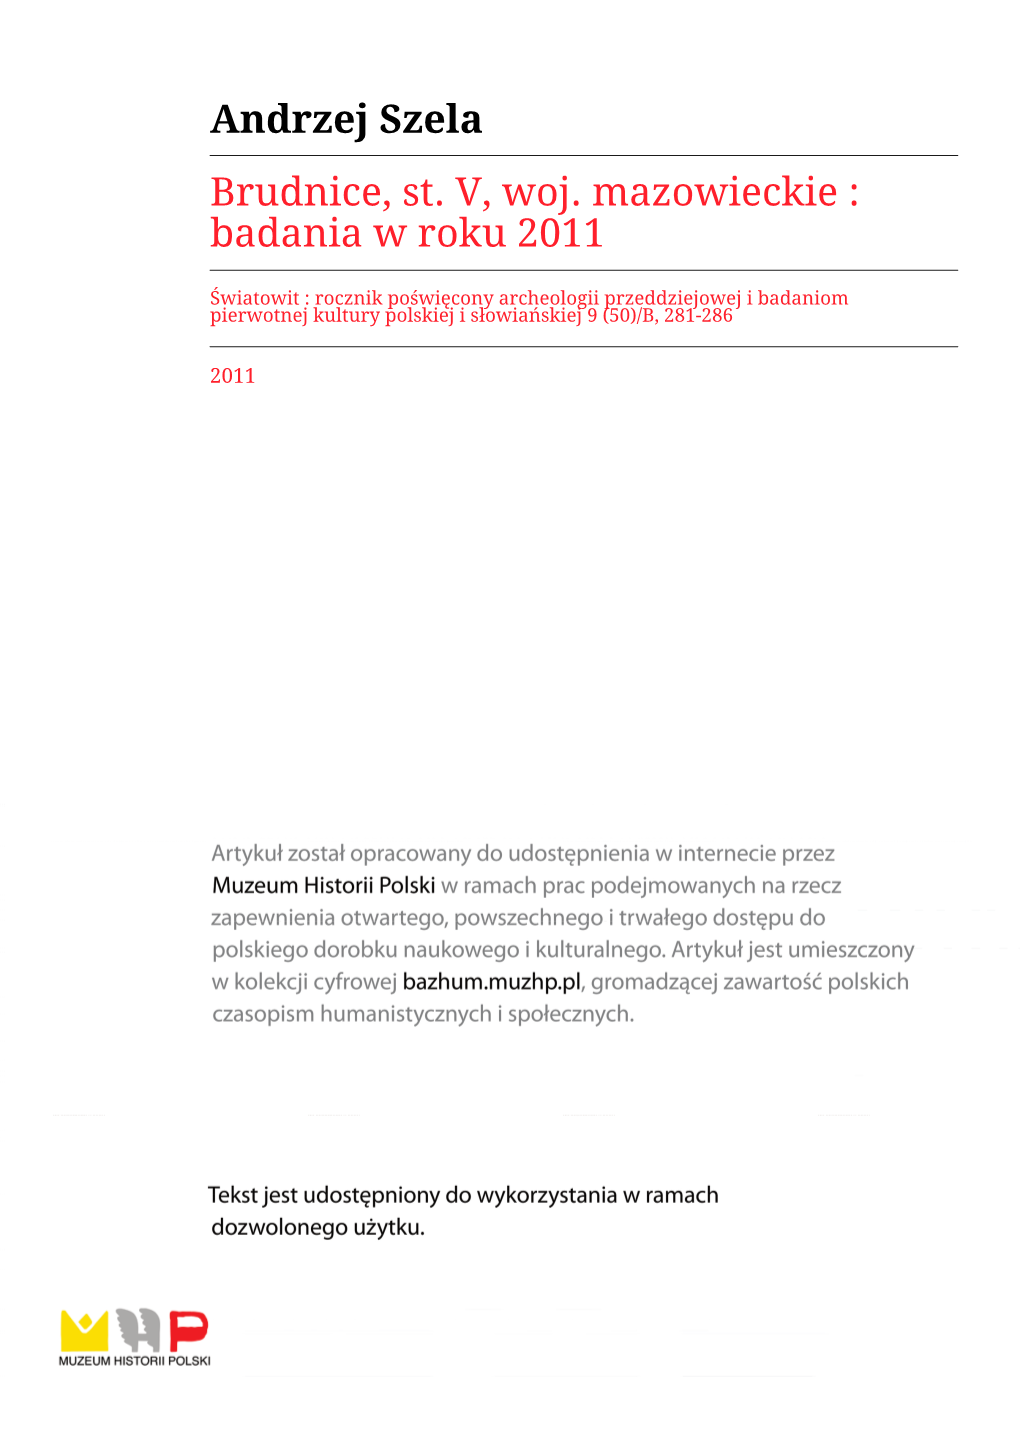 Andrzej Szela Brudnice, St. V, Woj. Mazowieckie : Badania W Roku 2011